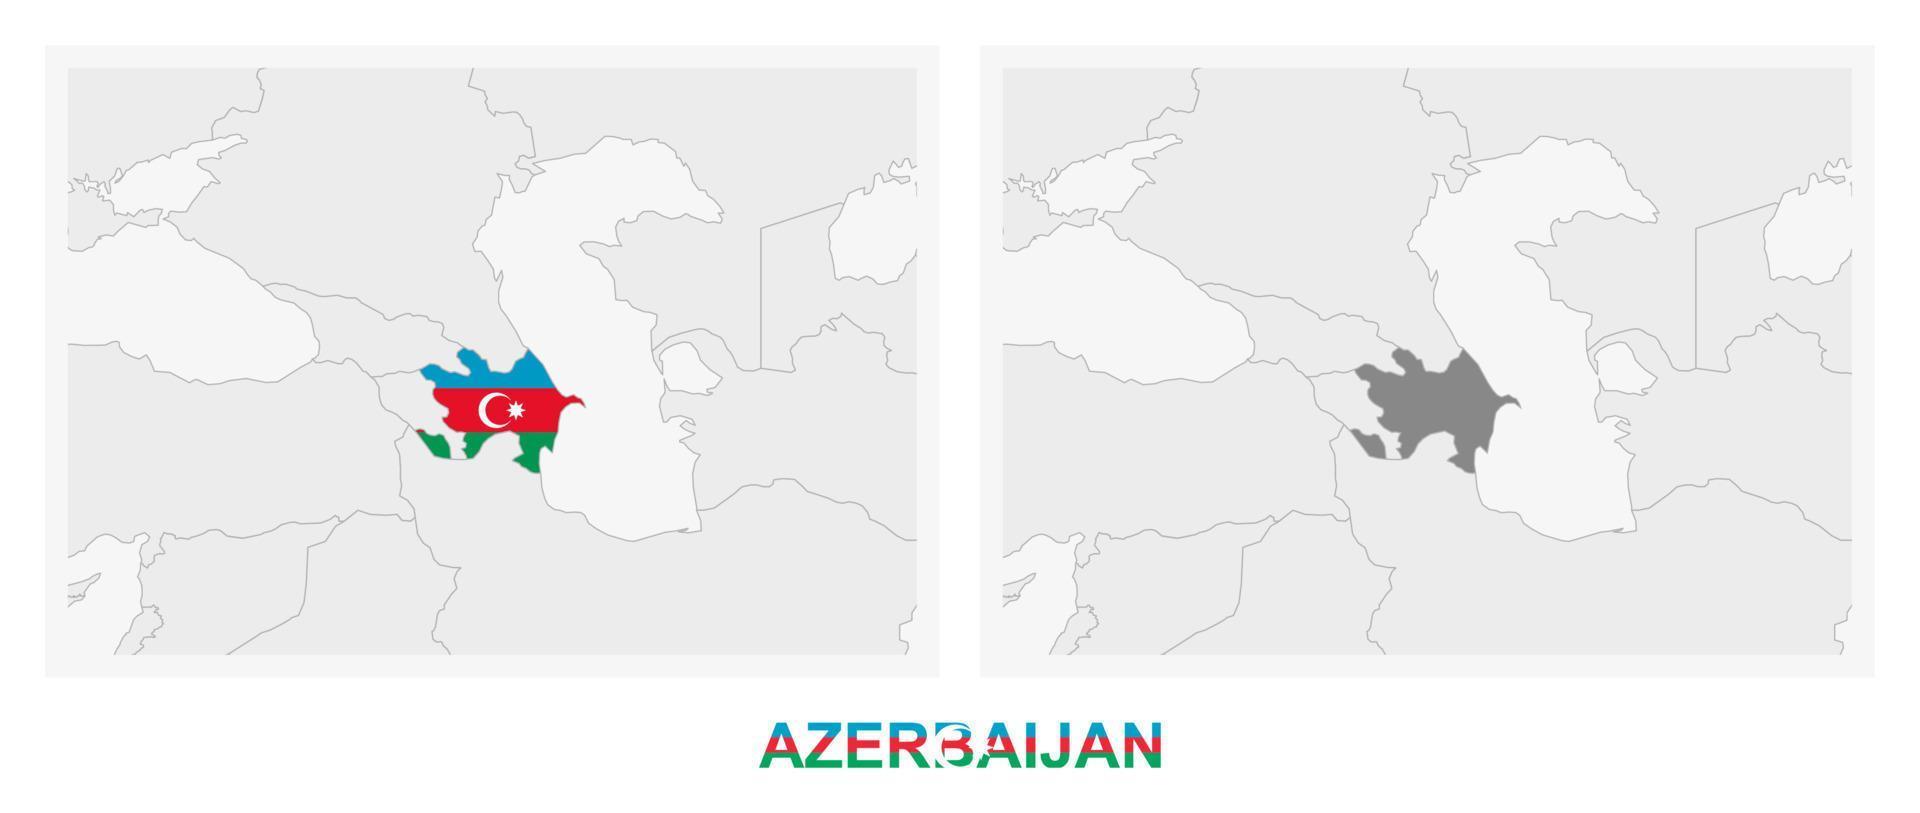 Zwei Versionen der Karte von Aserbaidschan, mit der Flagge von Aserbaidschan und dunkelgrau hervorgehoben. vektor